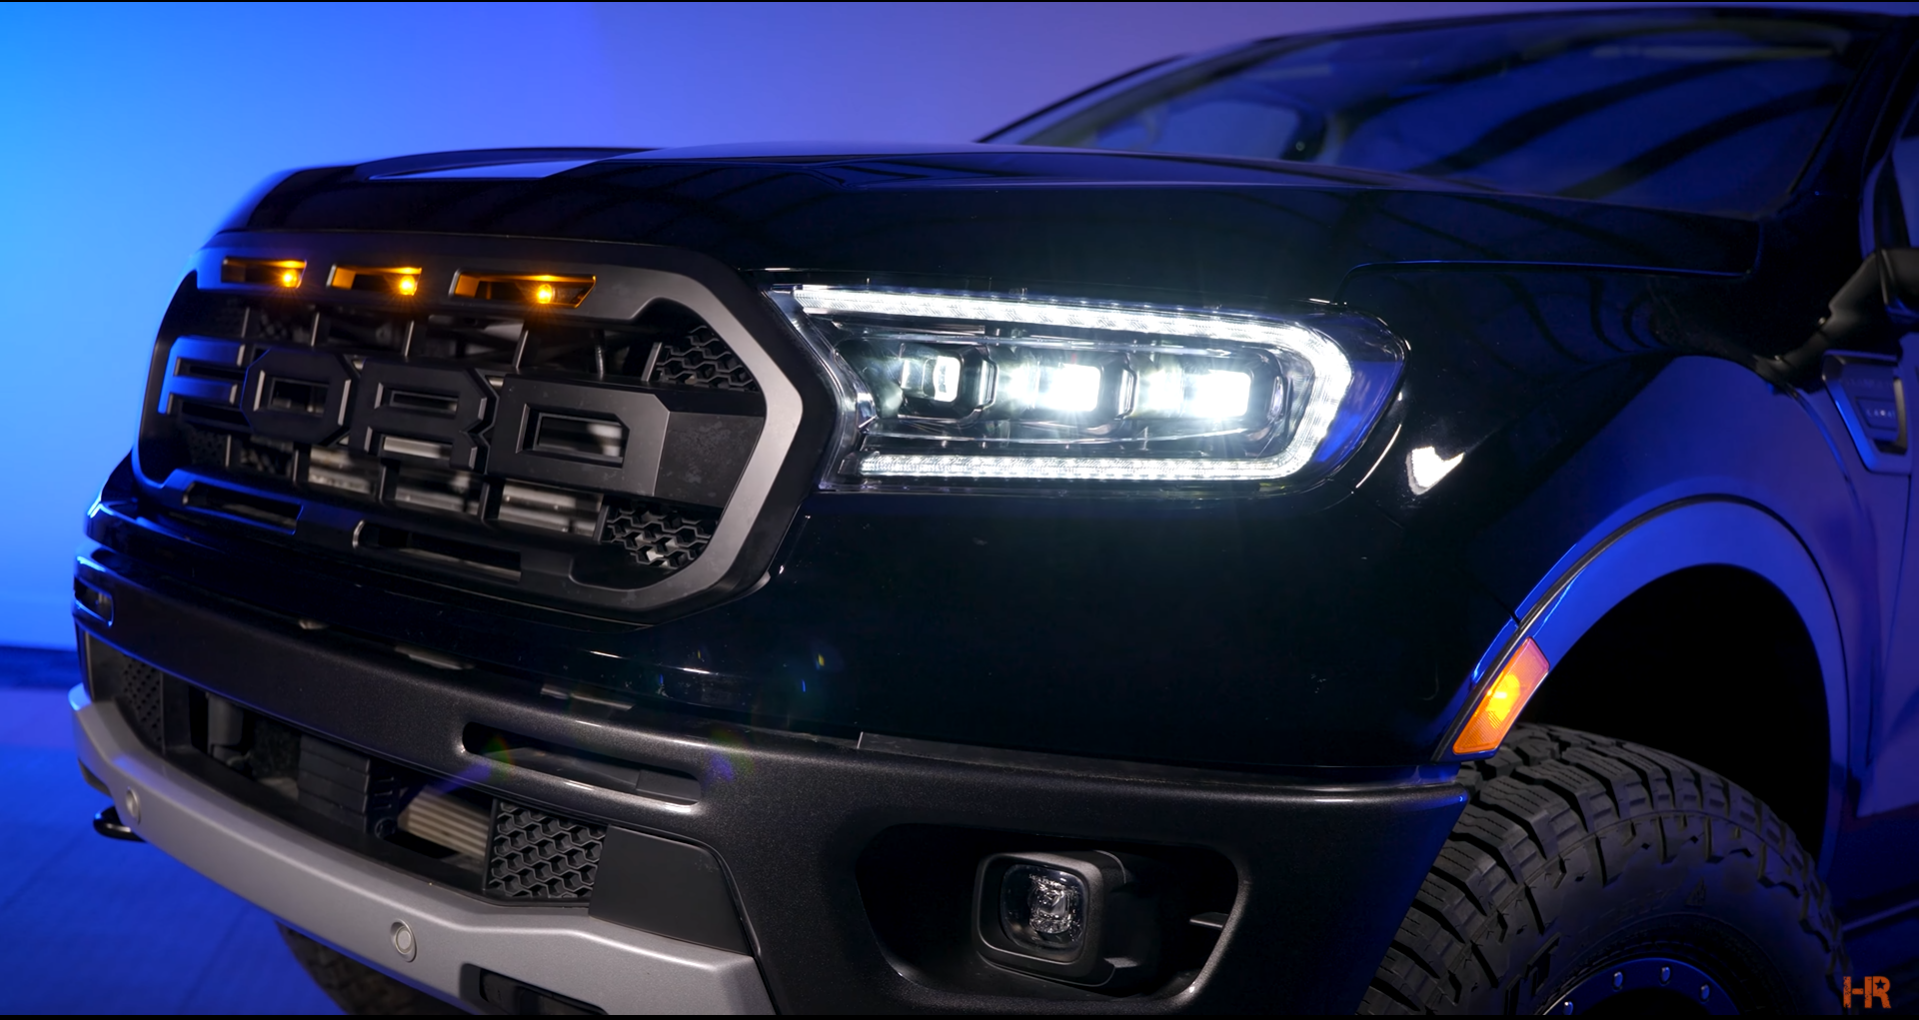 The Morimoto XB LED Headlight installed on the 2019 Ford Ranger.